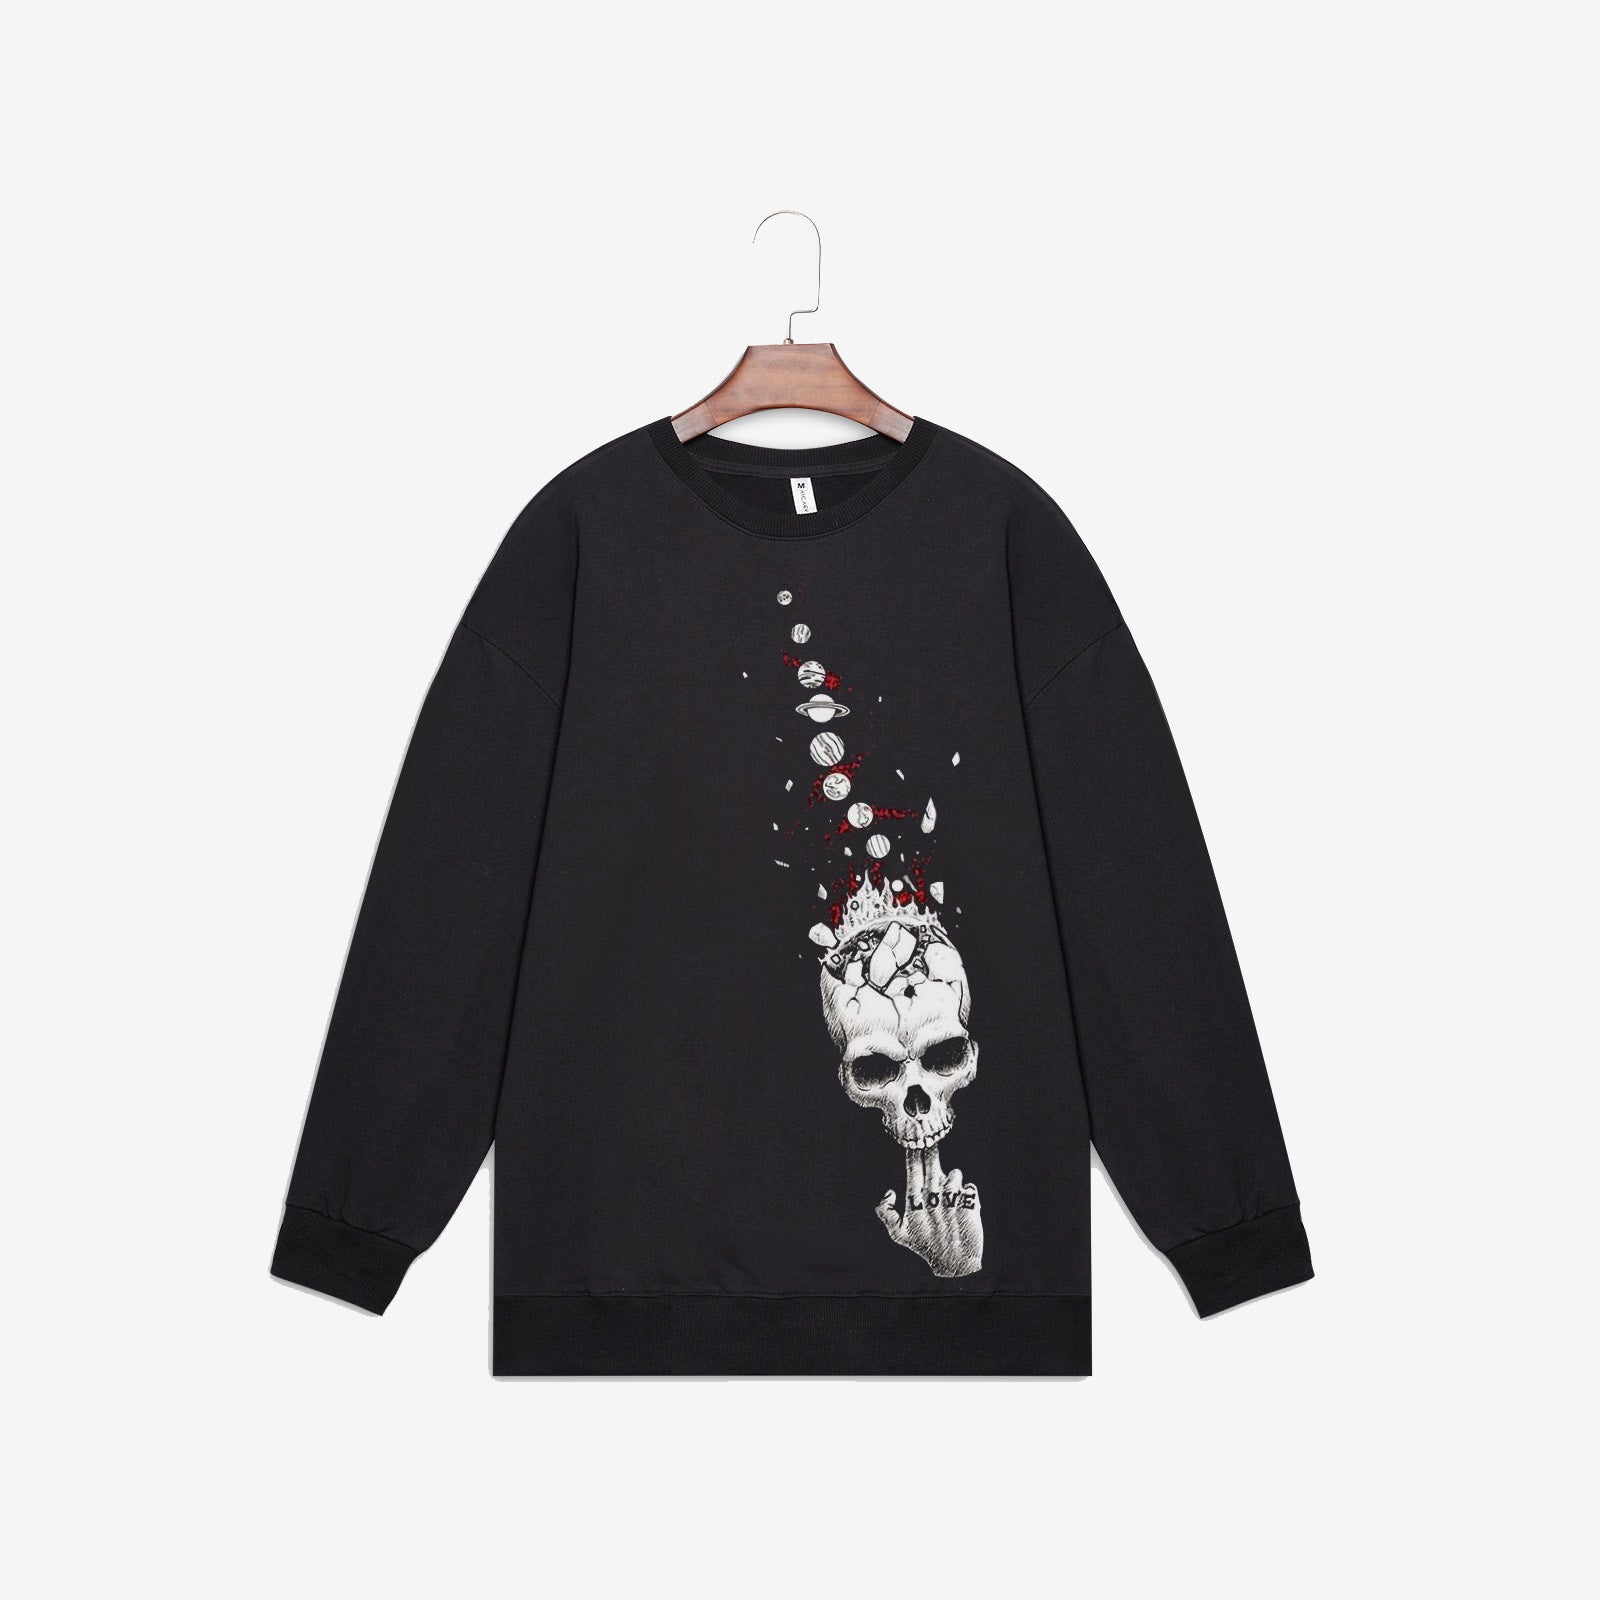 Minnieskull Skull Loves Universe Printed Designer Plus Sweatshirt